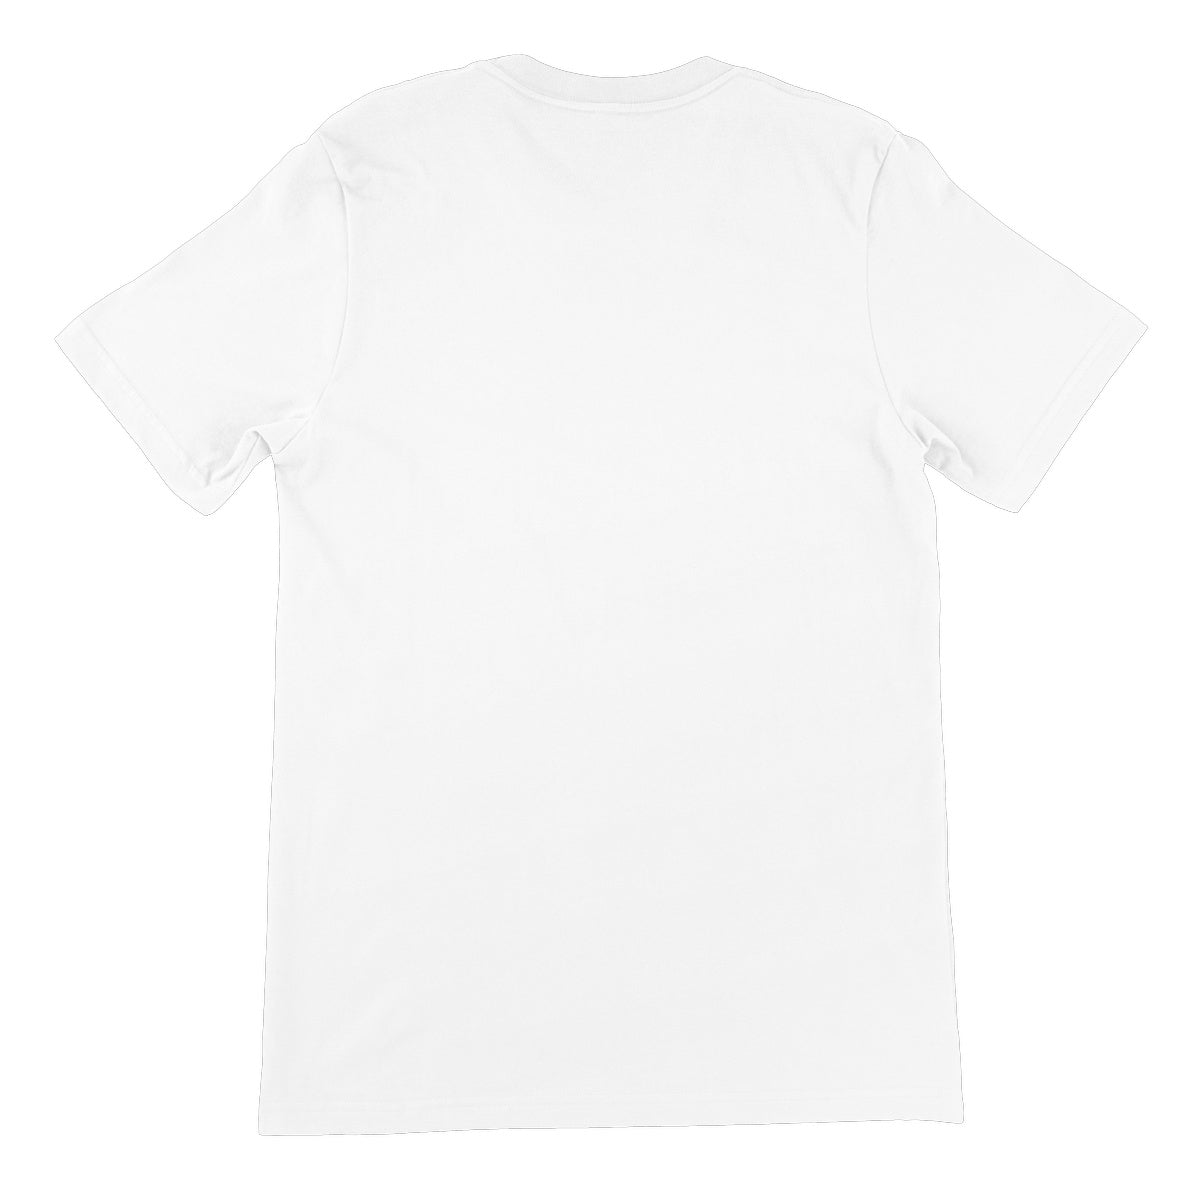 New Hope Illustrated Unisex Short Sleeve T-Shirt